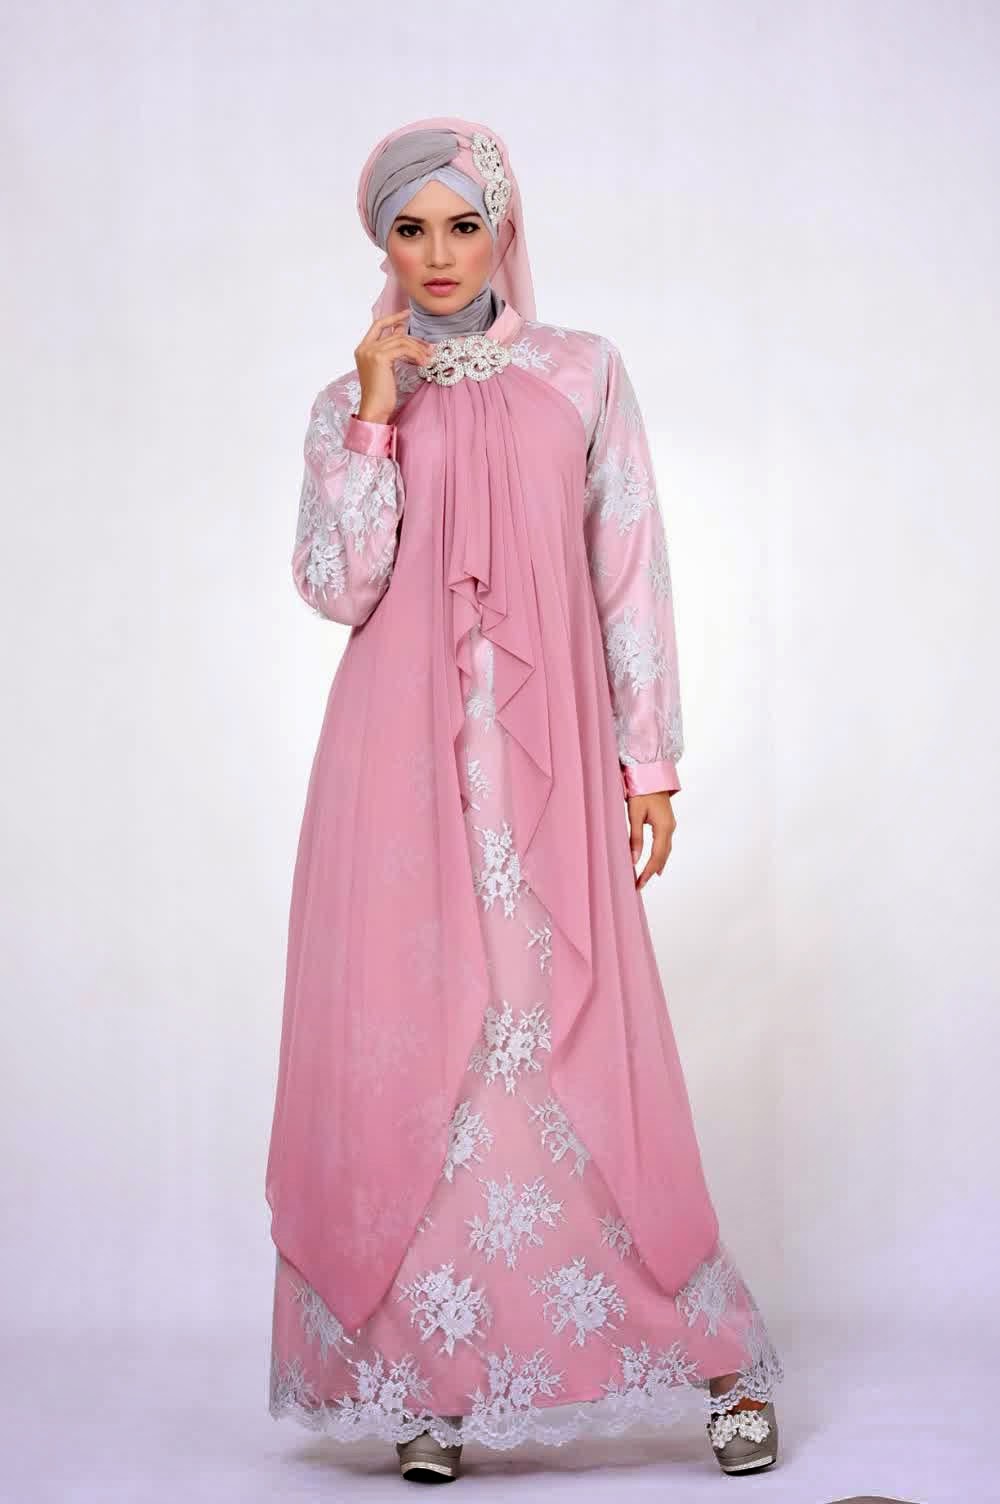 Inspirasi modis pembahasan baju muslim tentang  43+ Inspirasi Terpopuler Baju Muslim Dan Gamis Terbaru